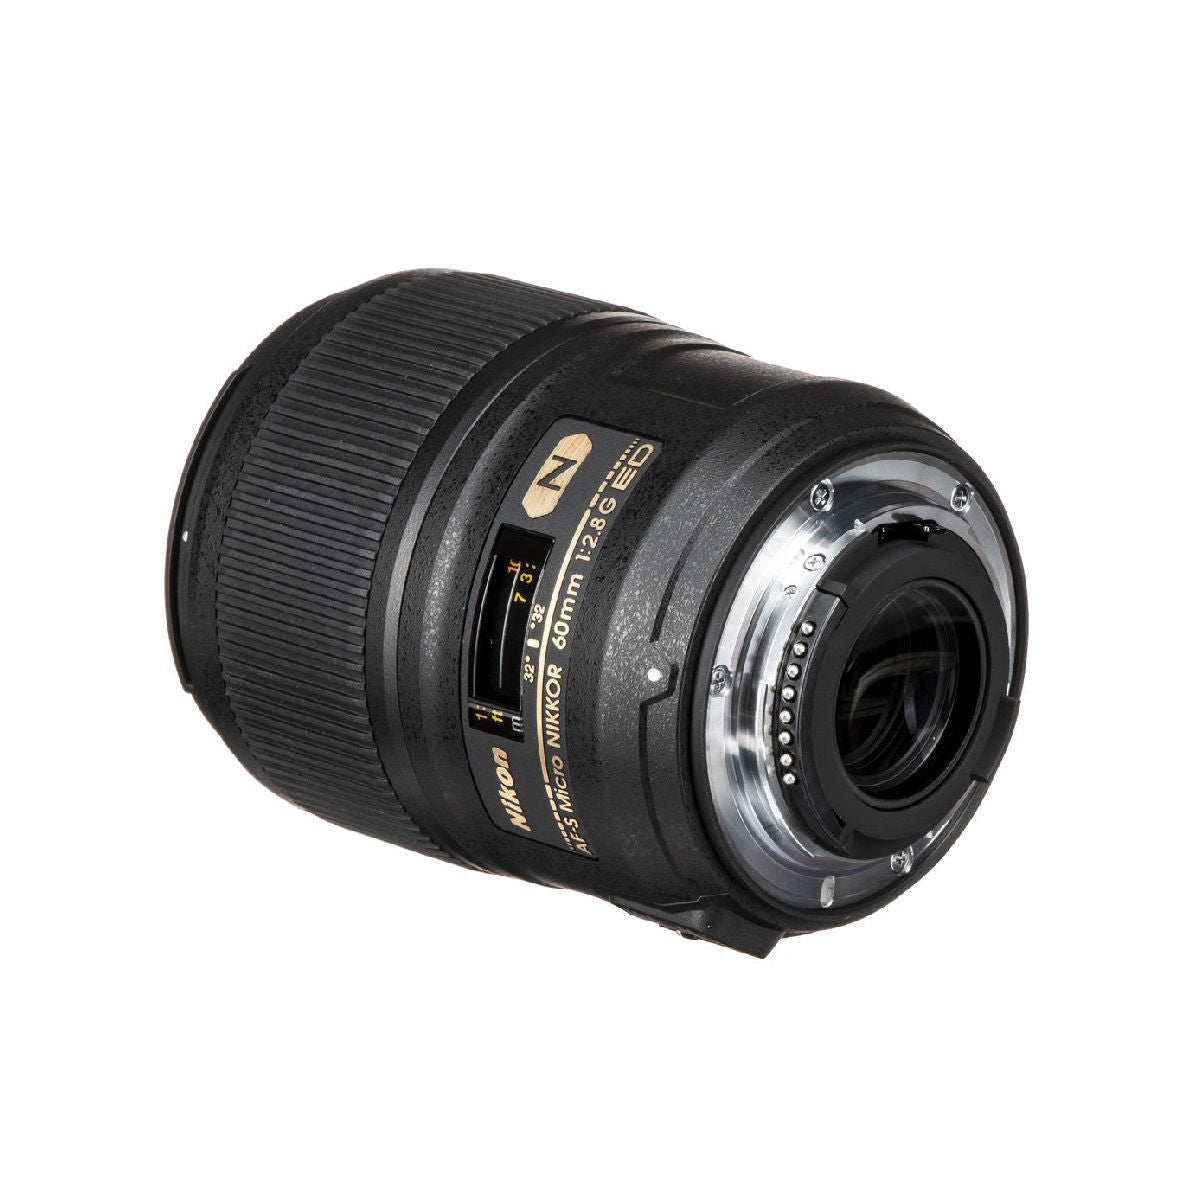 Nikon AF S Micro Nikkor 60mm f/2.8G ED Lens